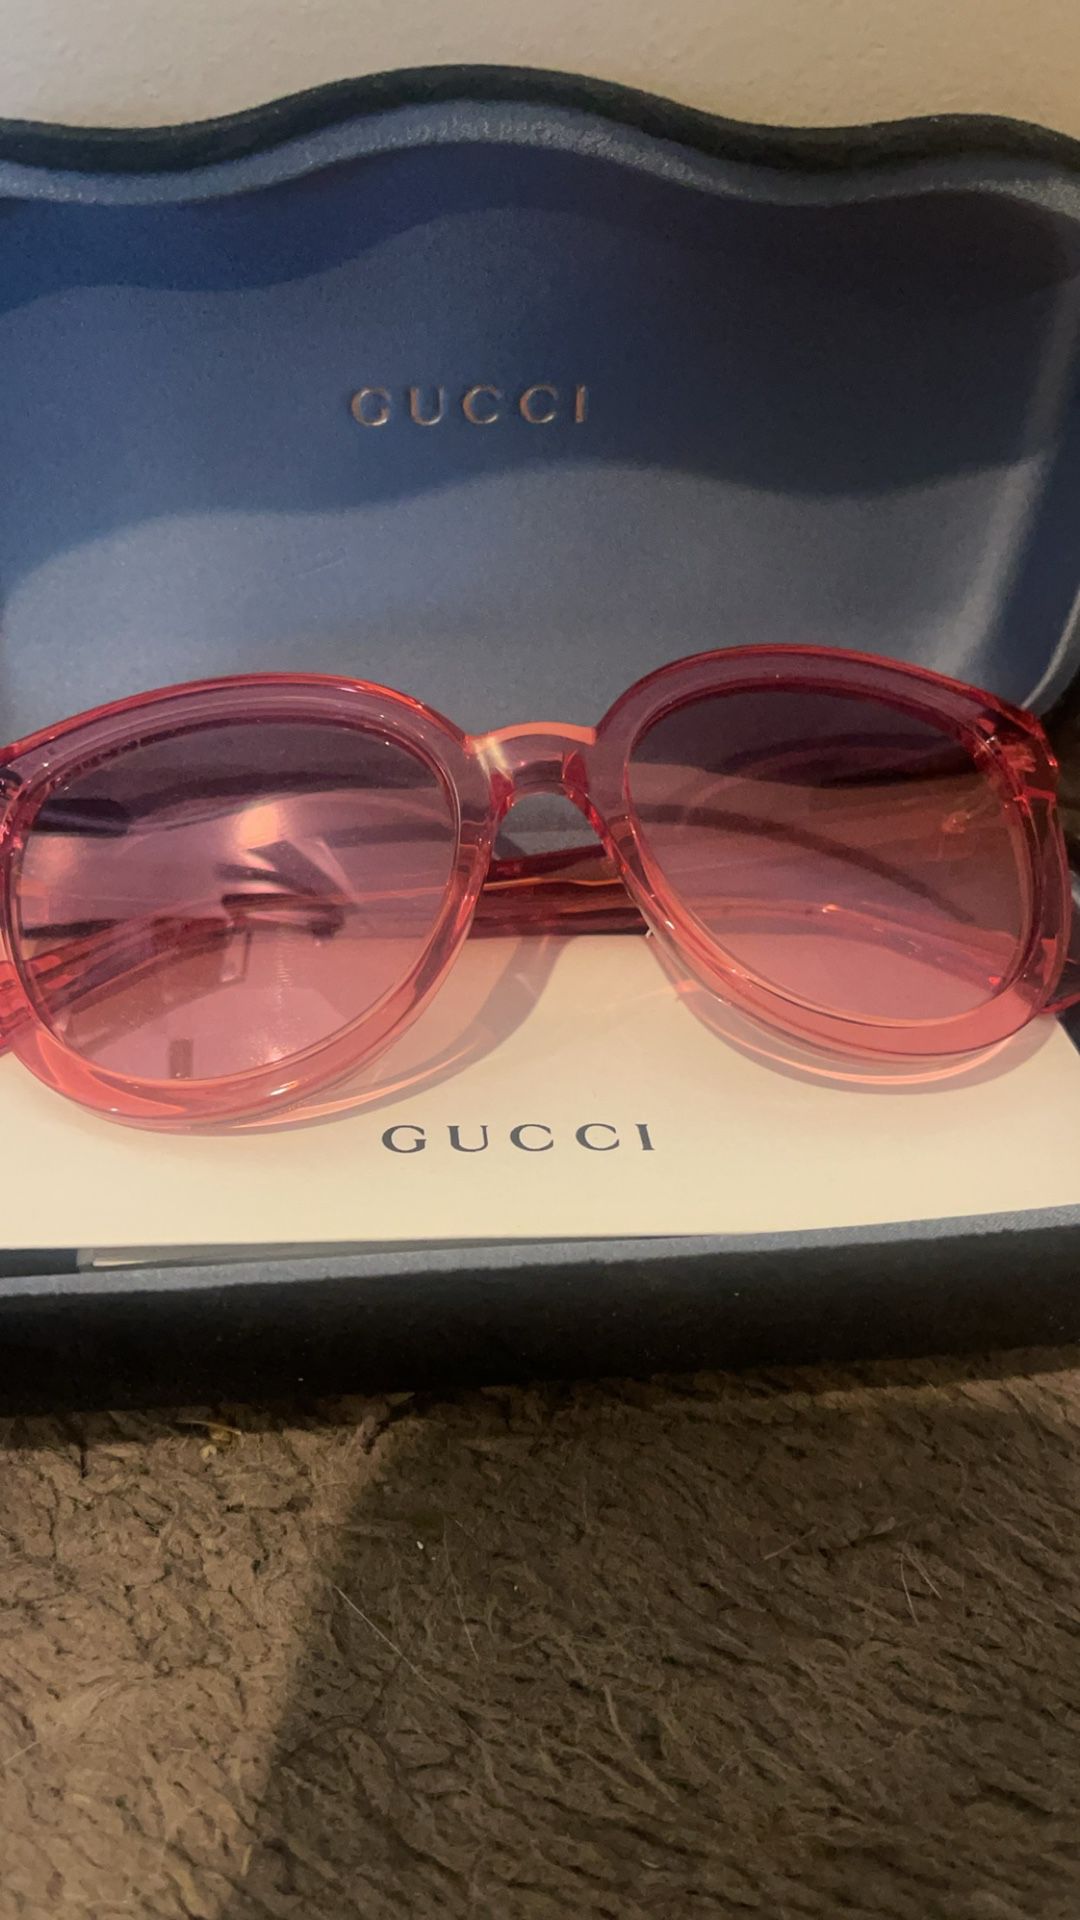 Sale!!! Gucci sunglasses 